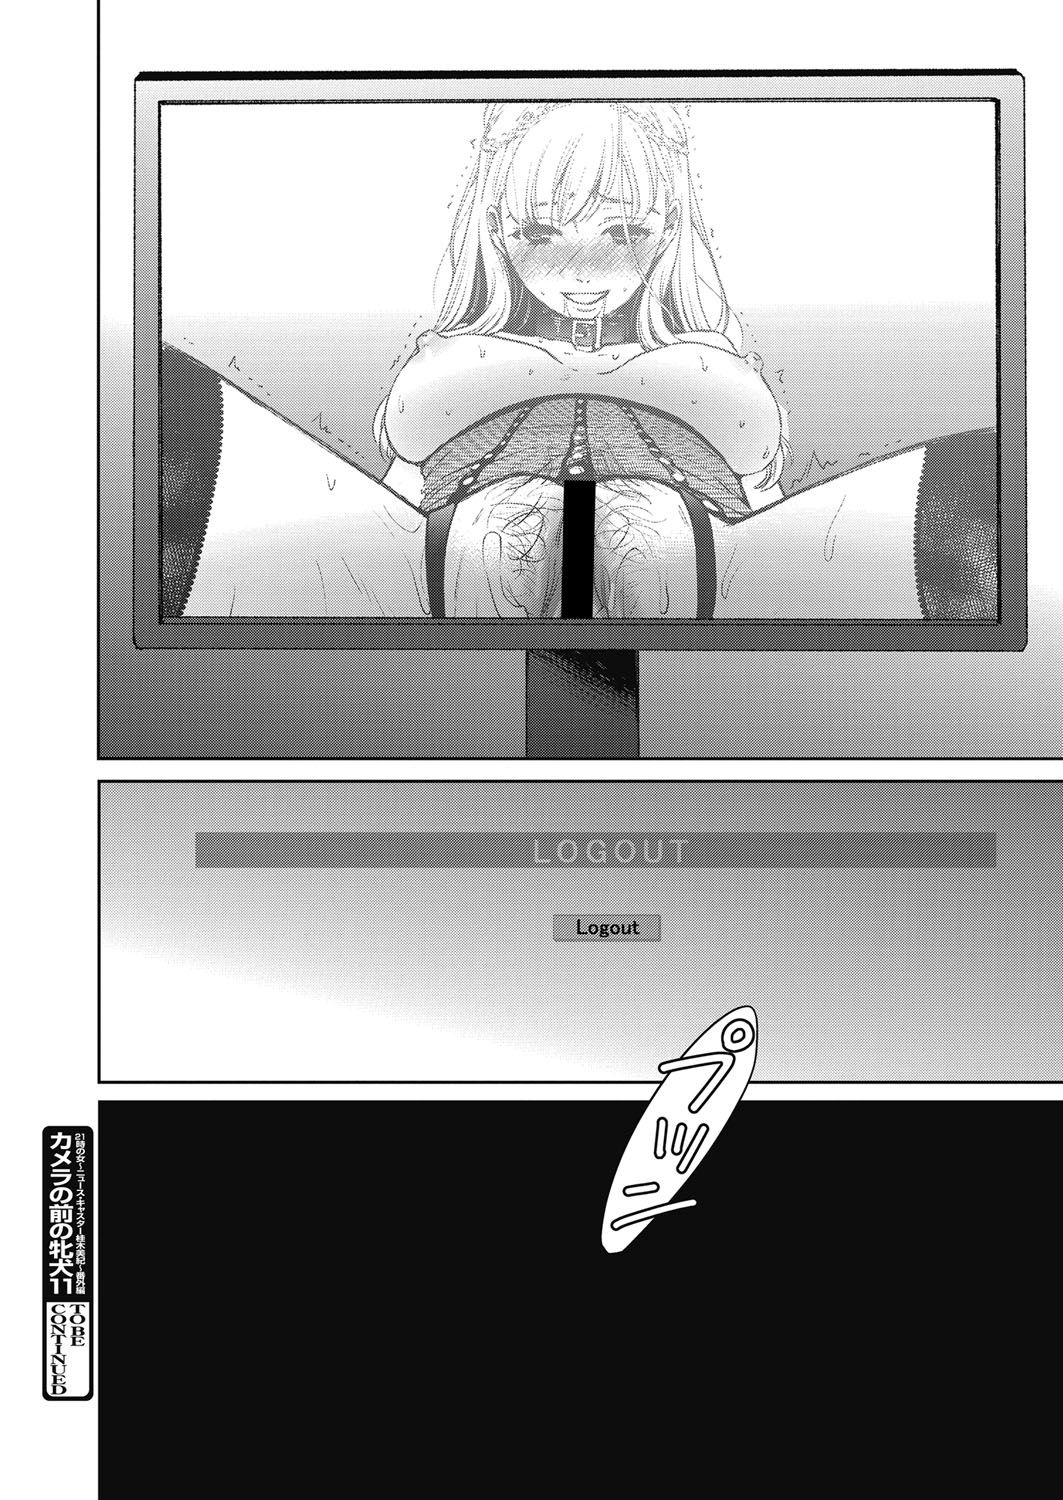 Web Manga Bangaichi Vol. 23 web 漫画ばんがいち Vol.23